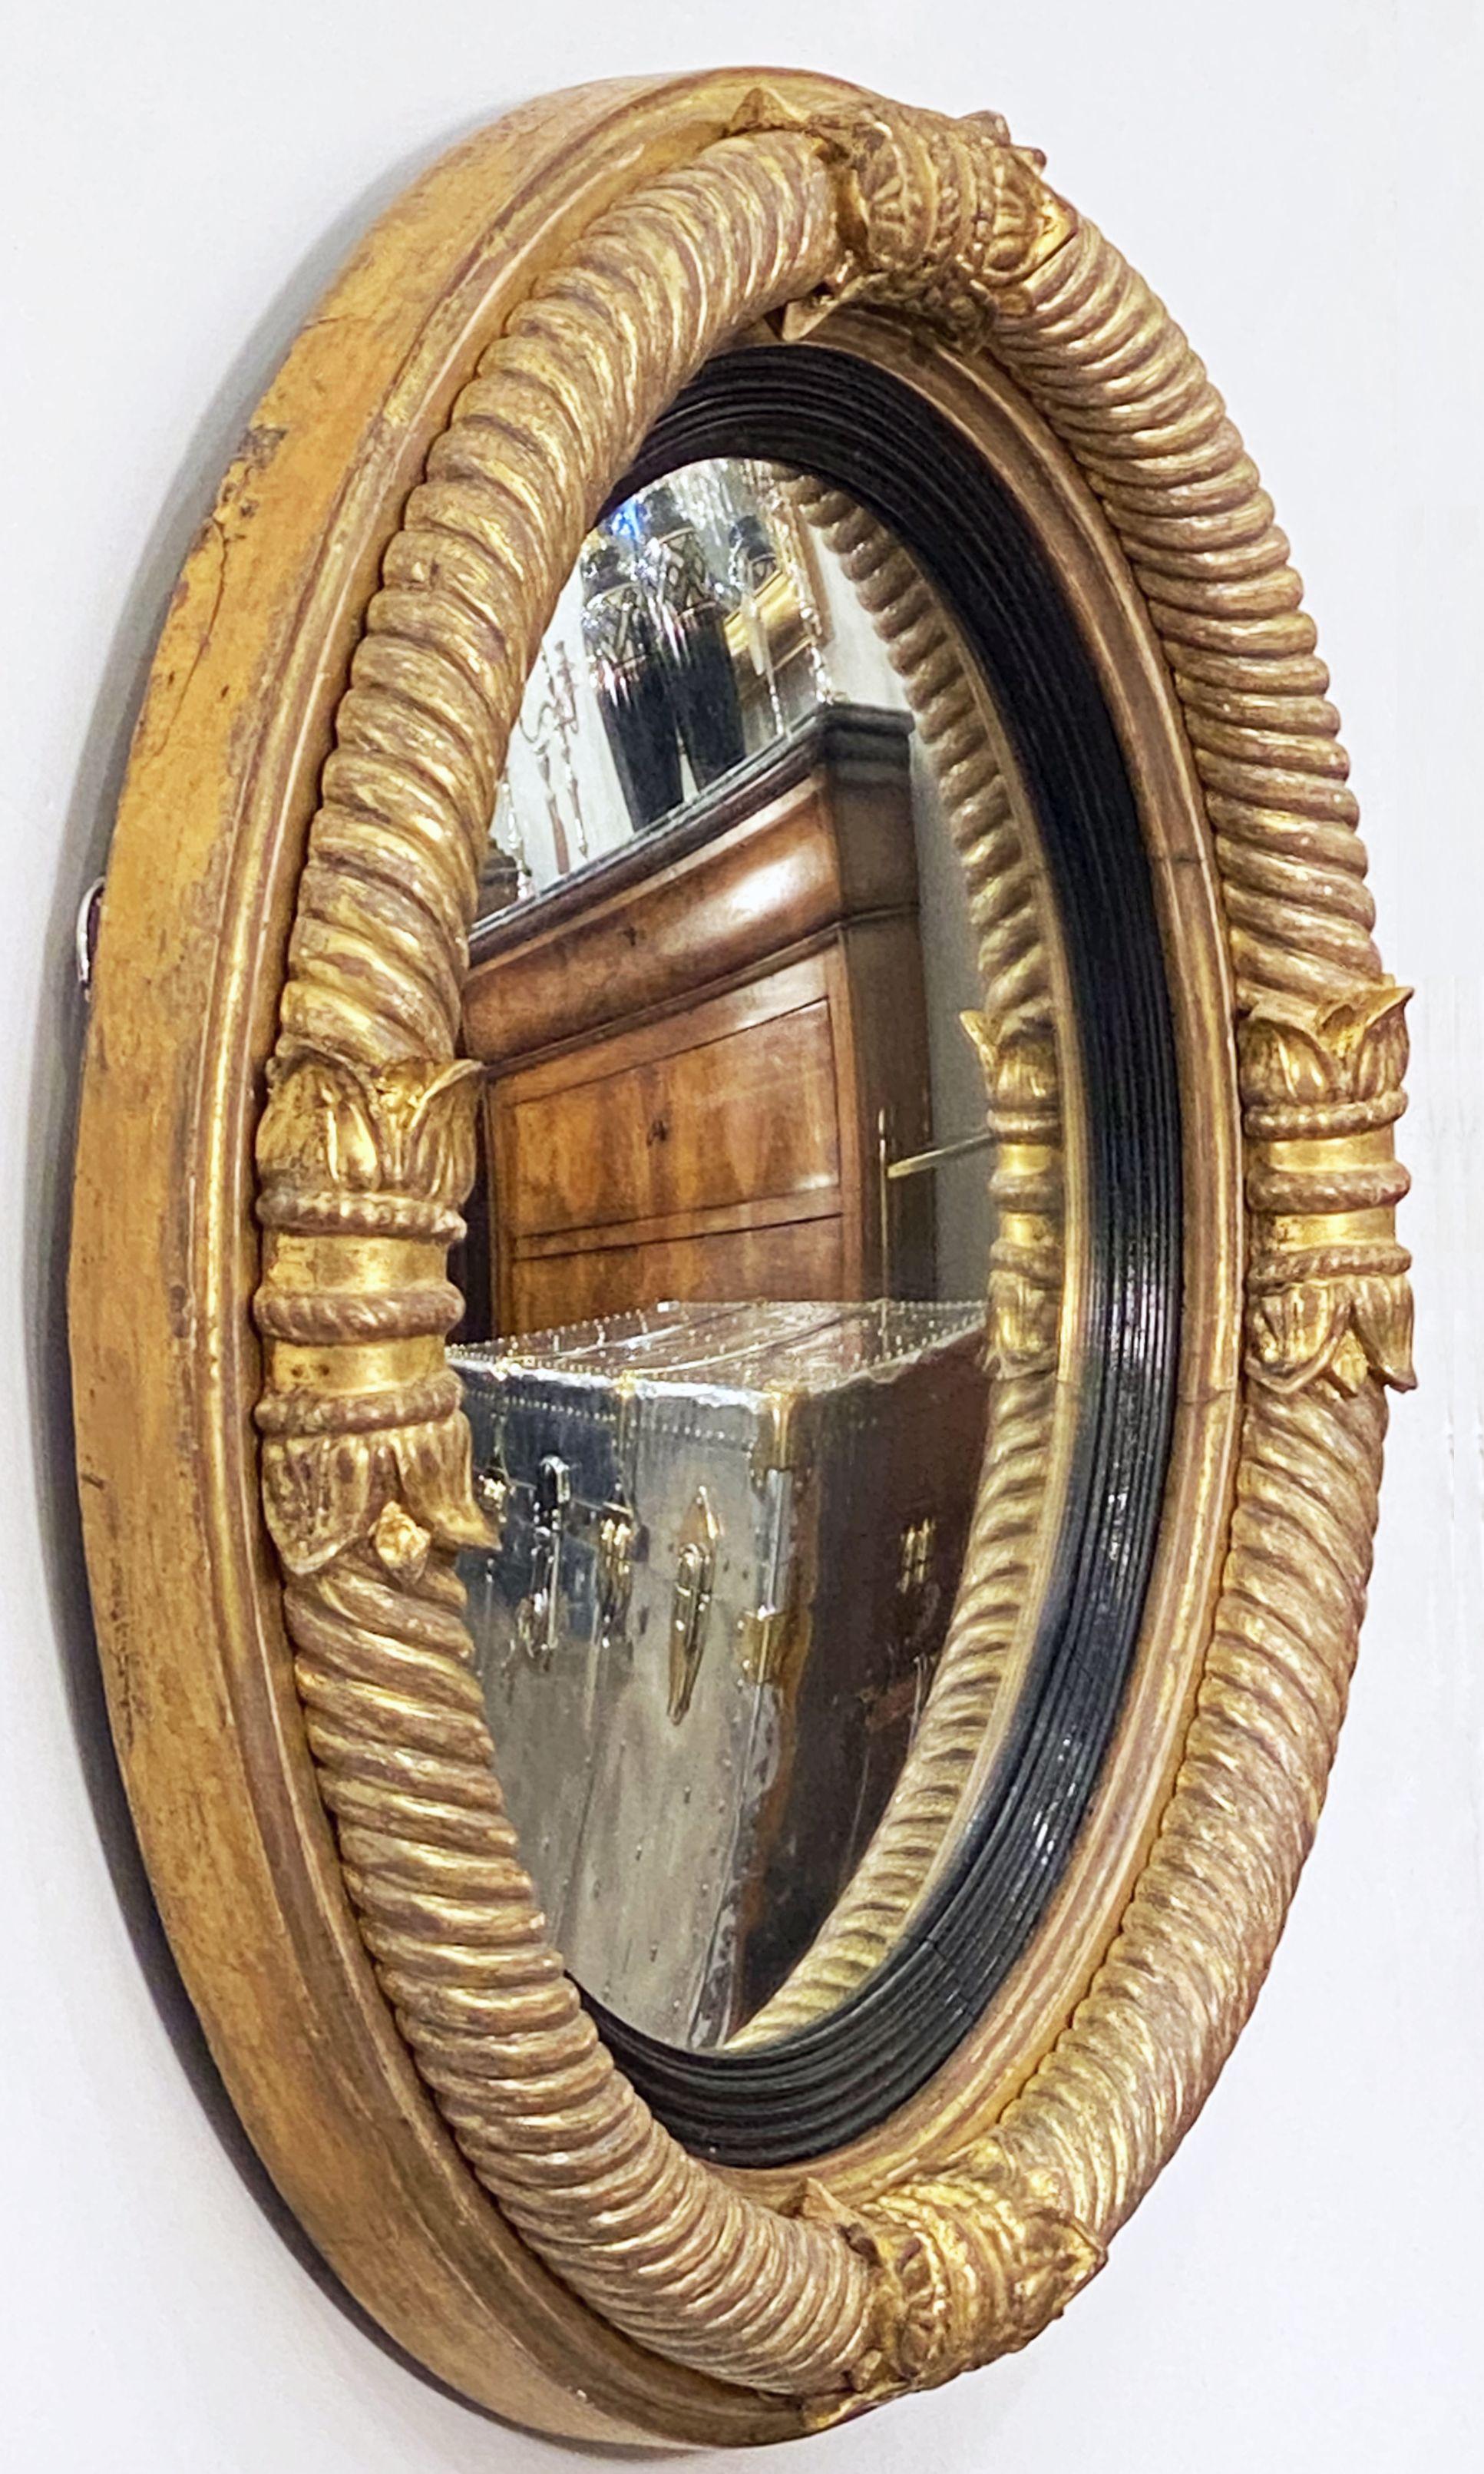 Un beau miroir convexe anglais d'époque Régence avec un design de colonnes classiques arquées autour d'une circonférence extérieure nervurée avec des traces de la dorure originale d'époque, et un anneau intérieur ébénisé et cannelé. 

Le cadre